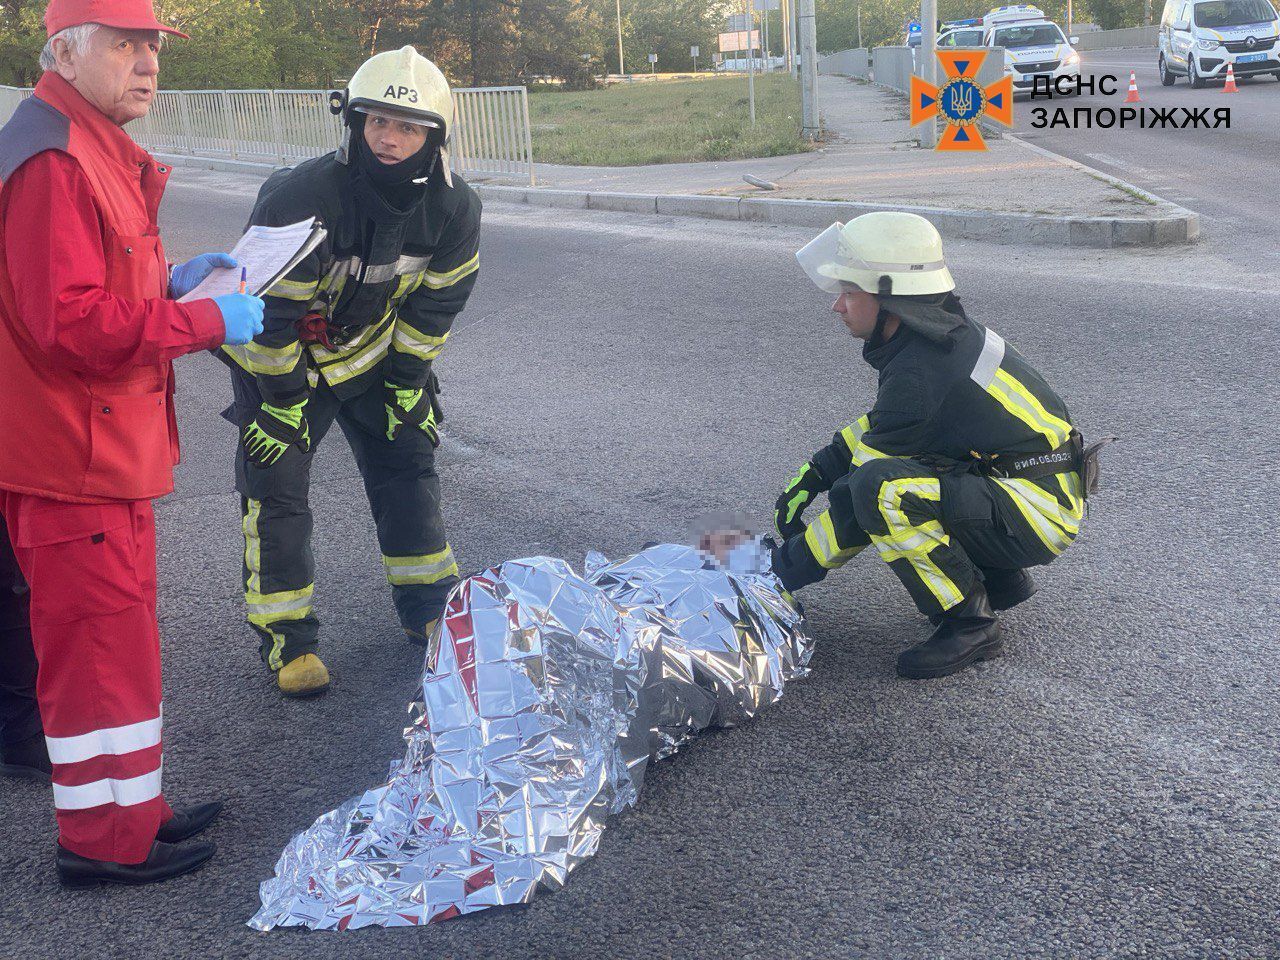 В Запорожье в результате ДТП погибли два человека, еще двое пострадали: одна из машин загорелась. Фото